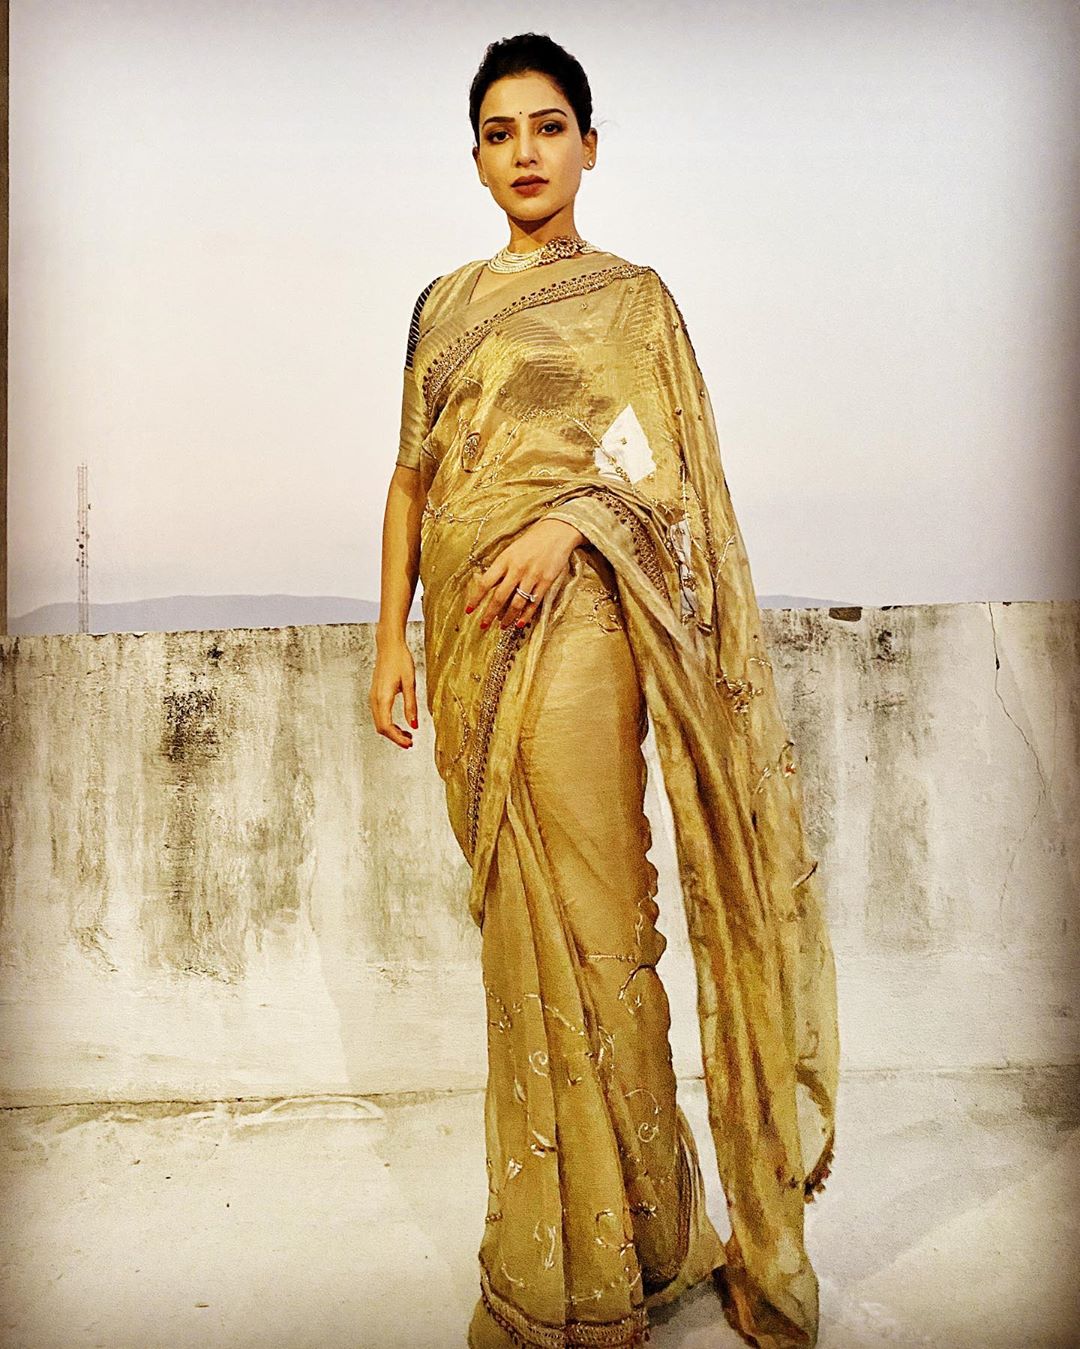  நடிகை சமந்தா. (Image: Instagram)